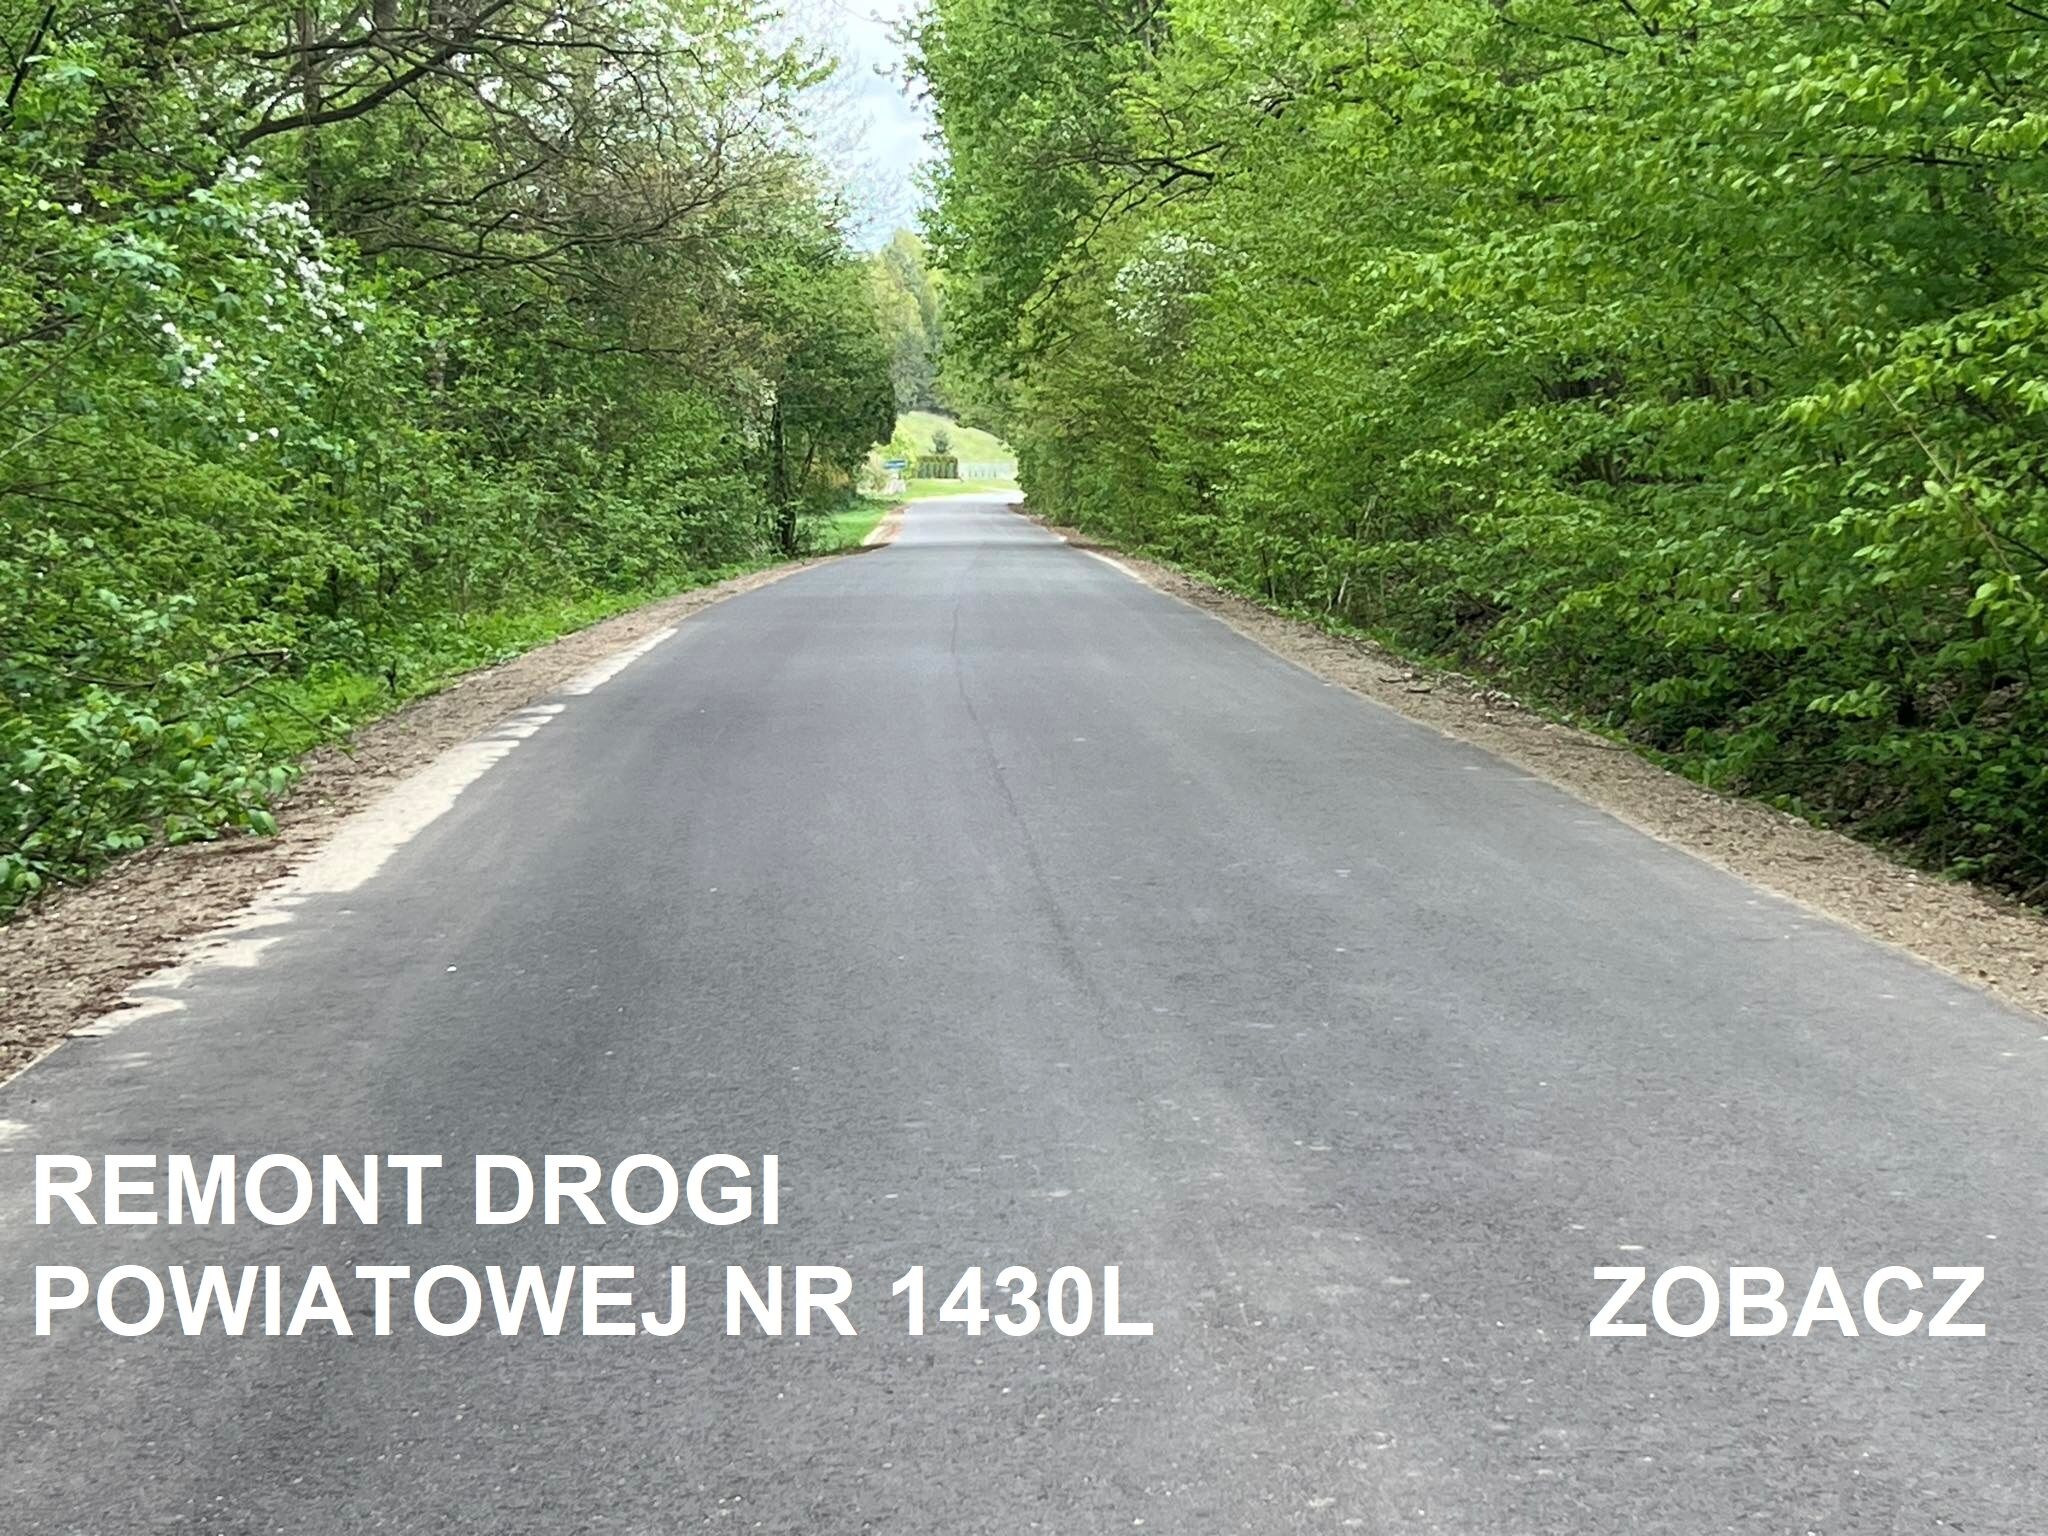 Nowo wyremontowany odcinek asfaltowej drogi powiatowej nr 1430L, otoczony zielenią drzew. Na asfalcie nadrukowany napis "REMONONT DROGI POWIATOWEJ NR 1430L ZOBACZ".